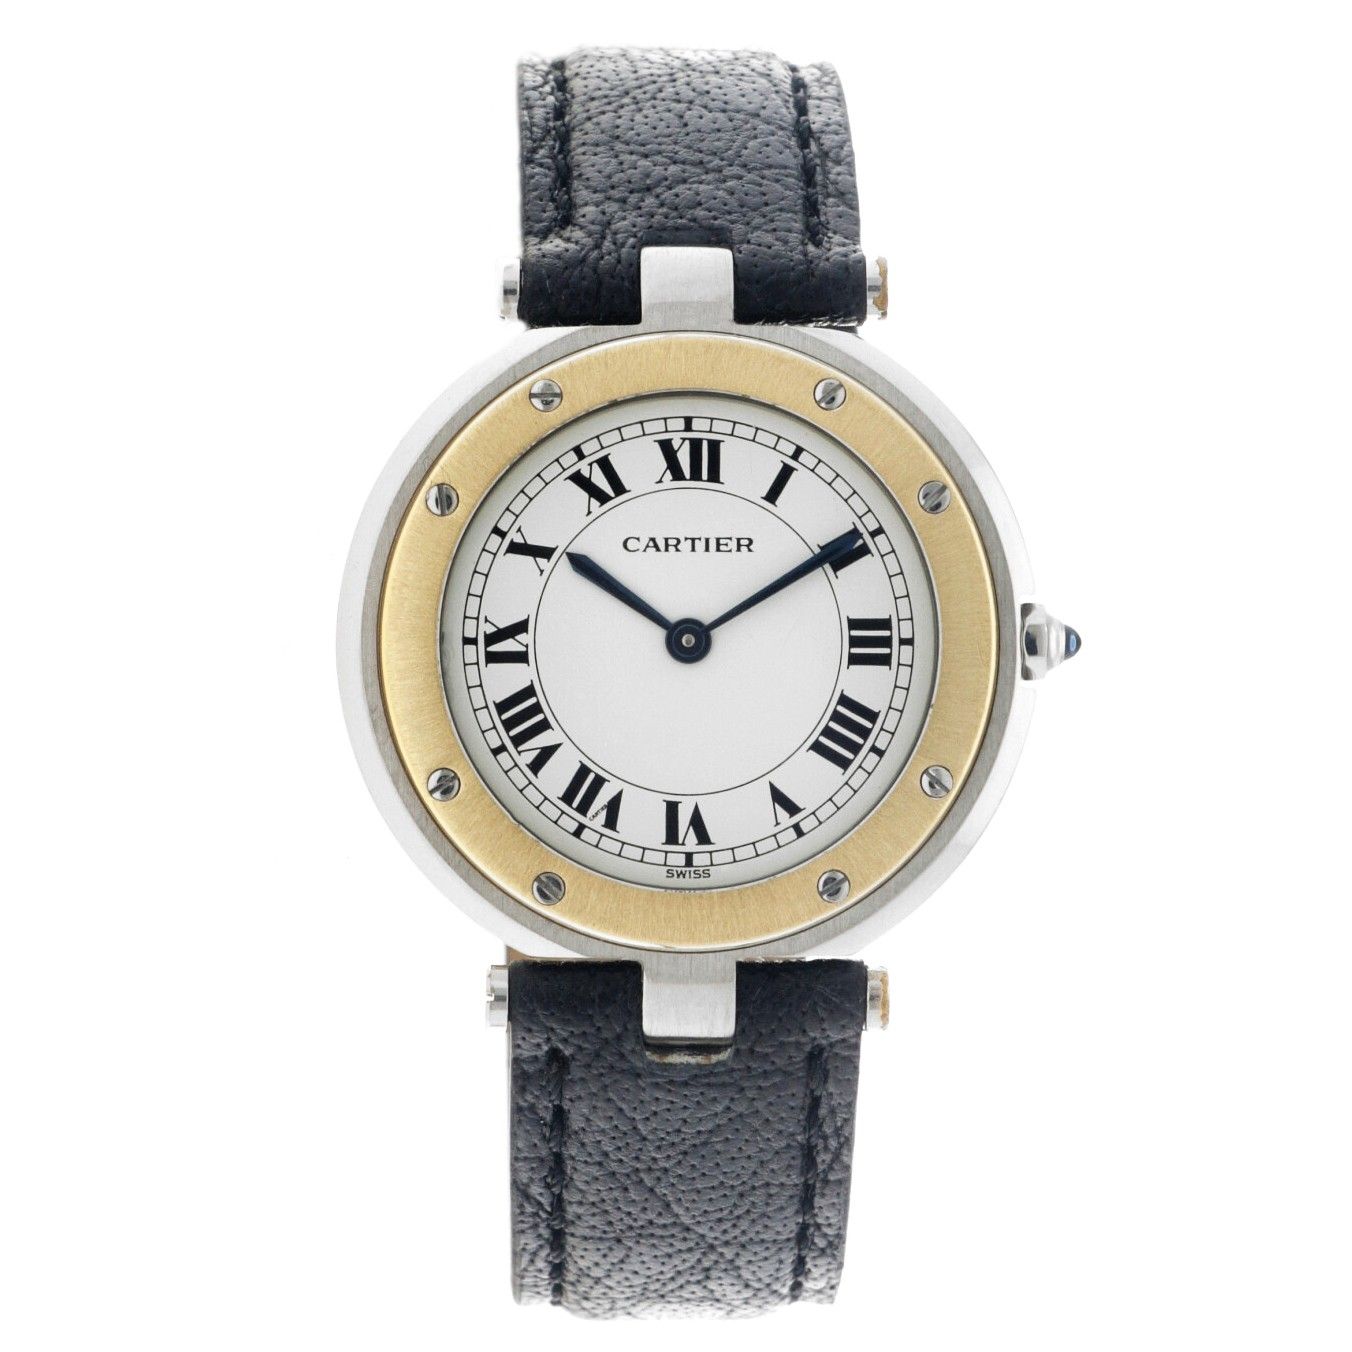 Cartier Santos Ronde 8191 - Men's watch Case: gold/steel (18 kt.) - strap: leath&hellip;